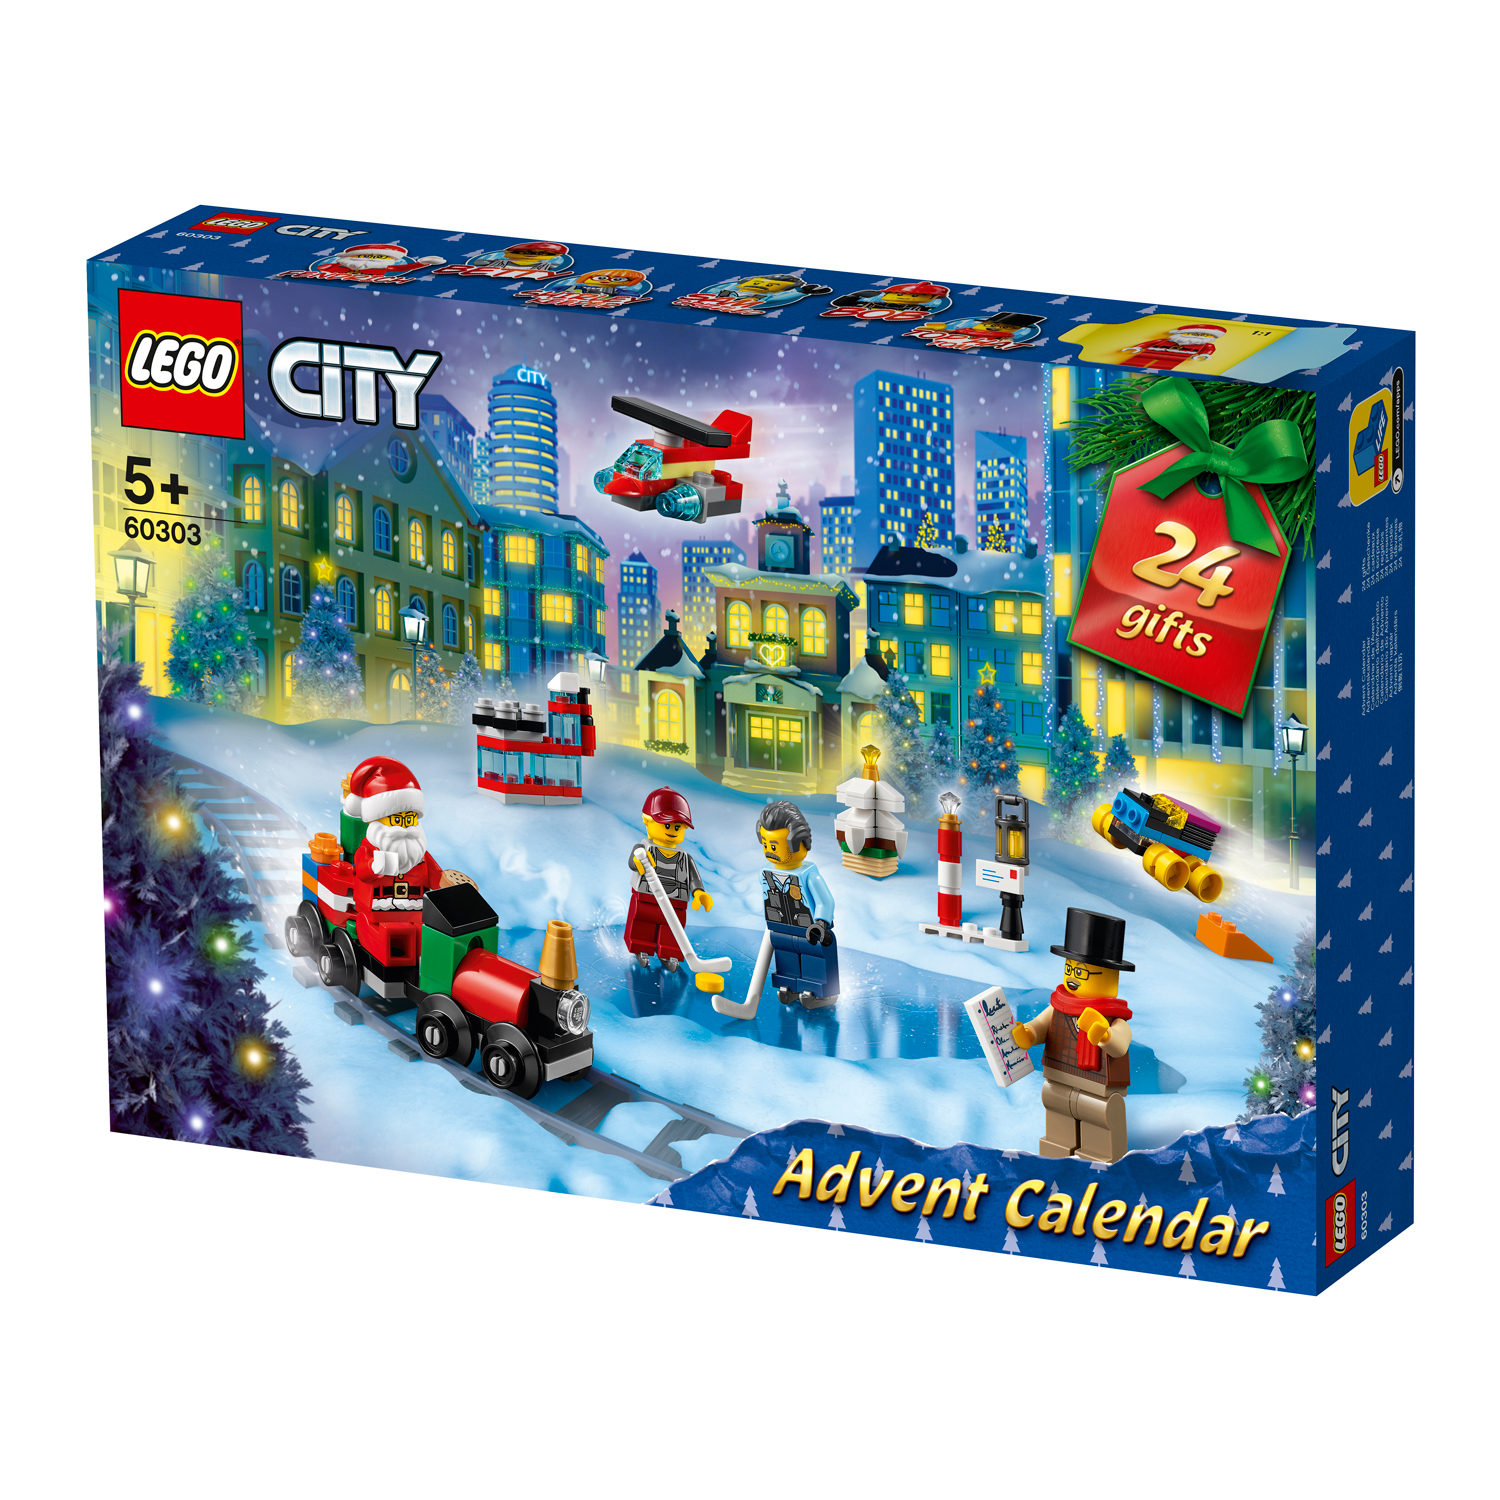 LEGO CITY 60303 ADVENTKALENDER